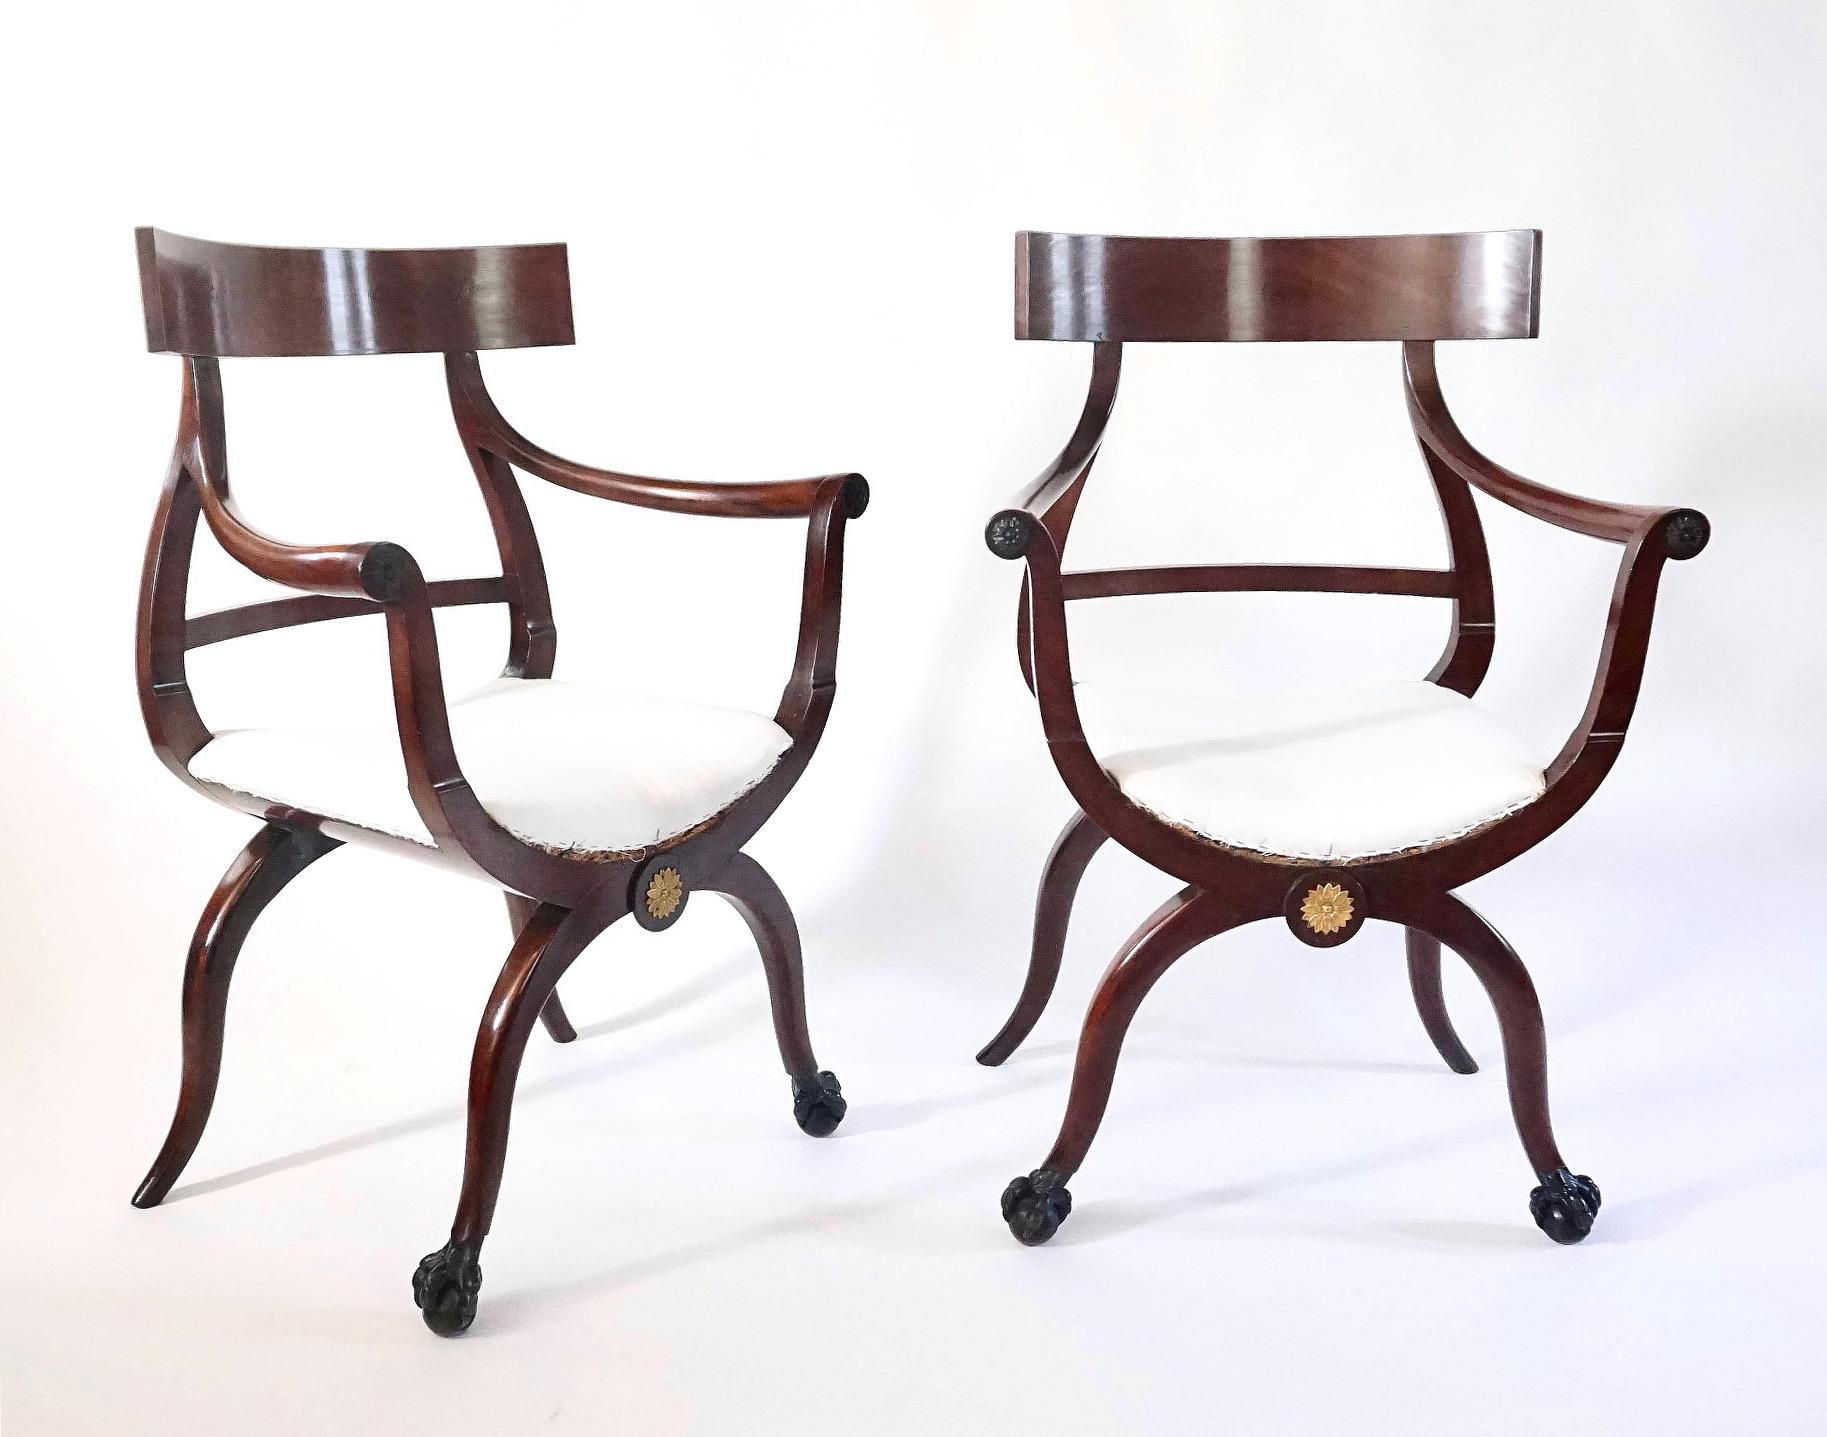 Une paire incroyablement rare et inhabituelle de fauteuils de style Directoire russe ou balte vers 1800, de forme variante klismos et curule, les cadres en acajou massif montés sur rosette en métal doré avec des sièges rembourrés et des accoudoirs à